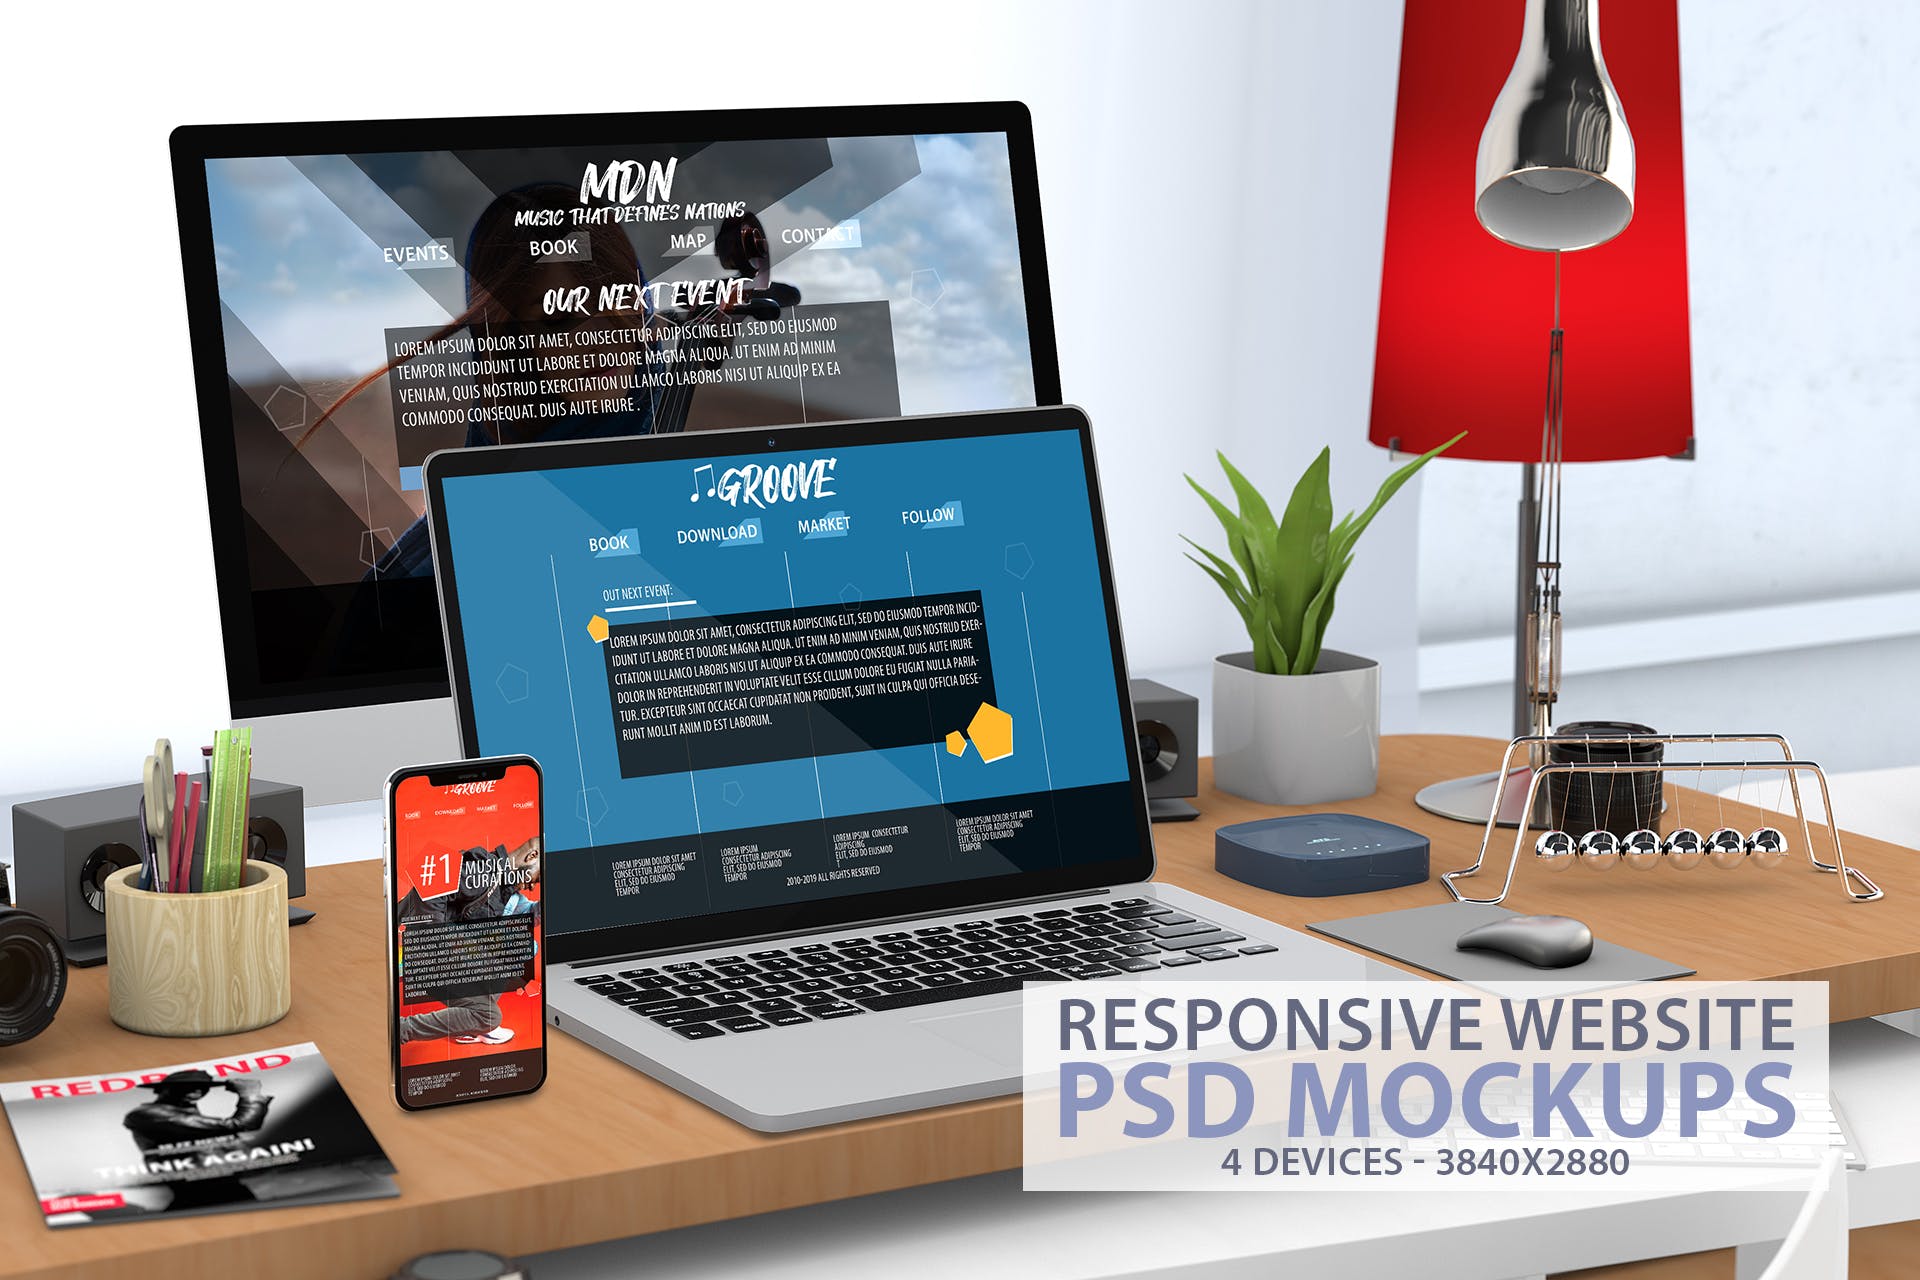 响应式办公桌场景网站UI设计效果图样机 Responsive Website PSD Mock-up Desk设计素材模板